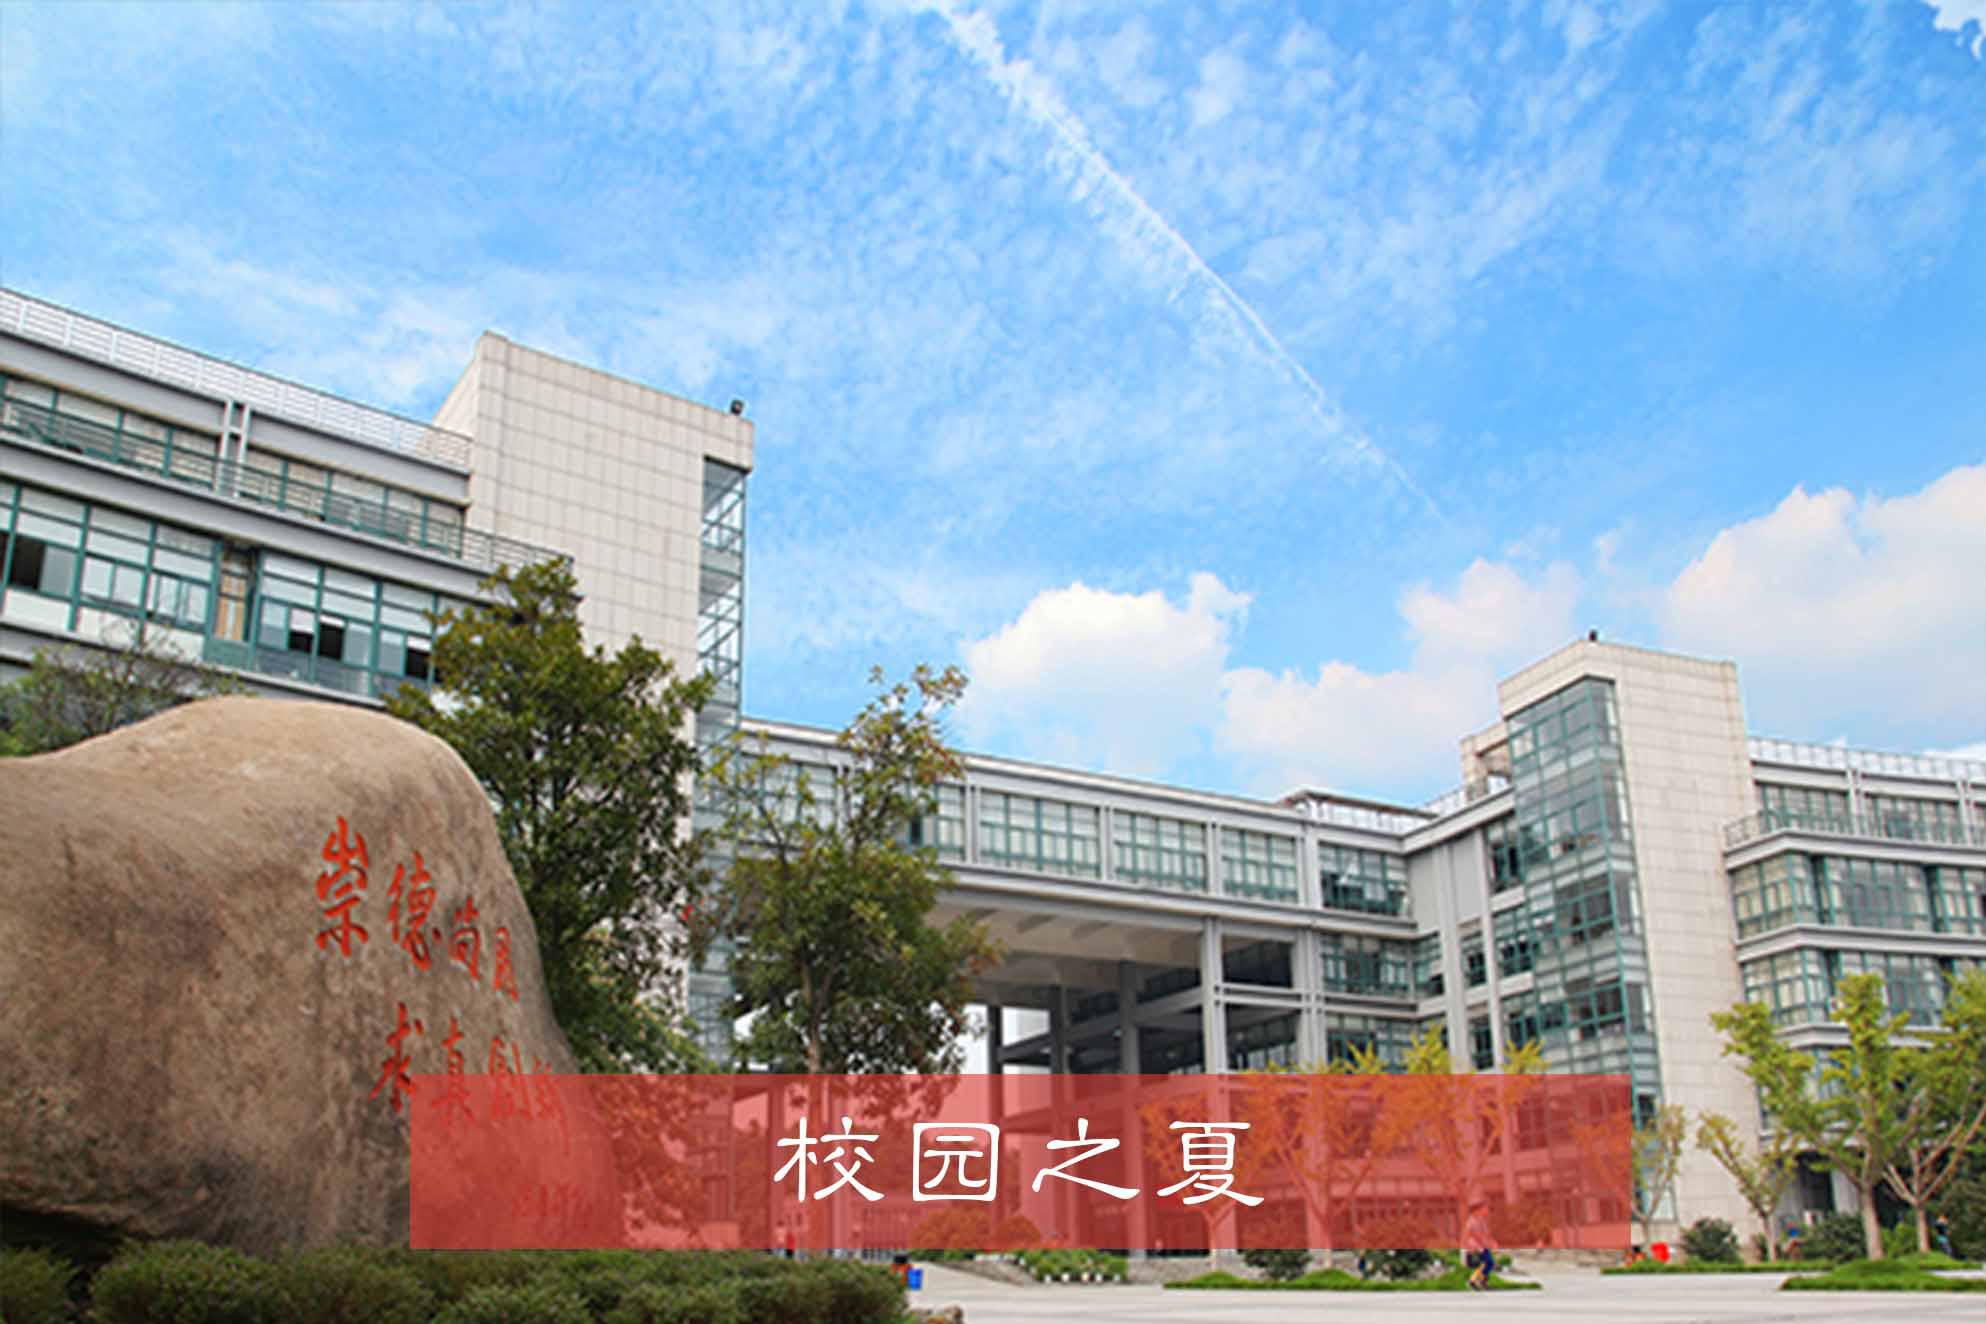 杭州智衡传媒教育中心